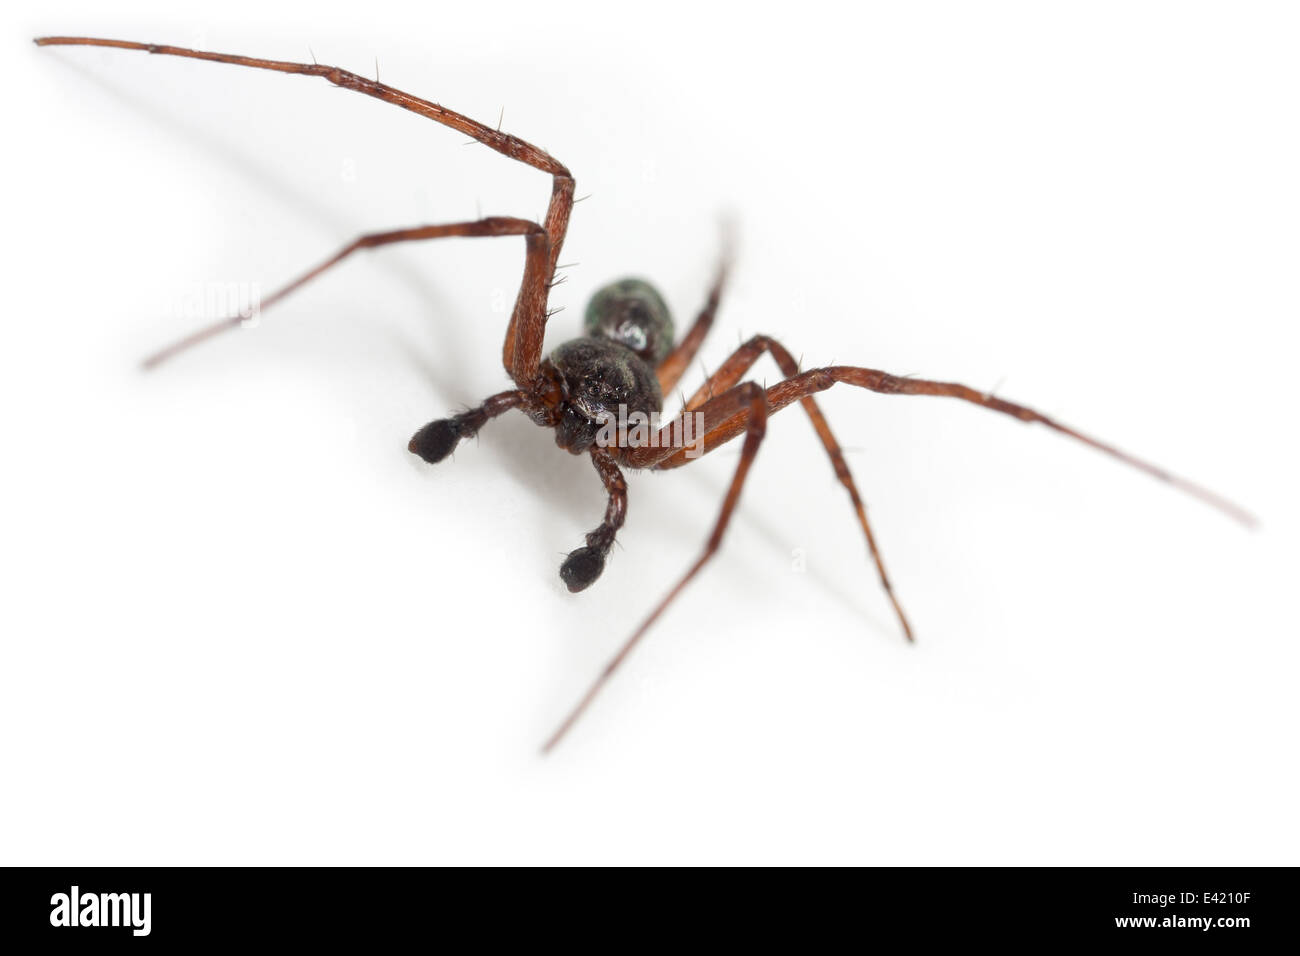 Männliche Philodromus Aureolus Spinne, Teil der Familie Philodromidae - Running Krabben Spinnen. Isoliert auf weißem Hintergrund. Stockfoto